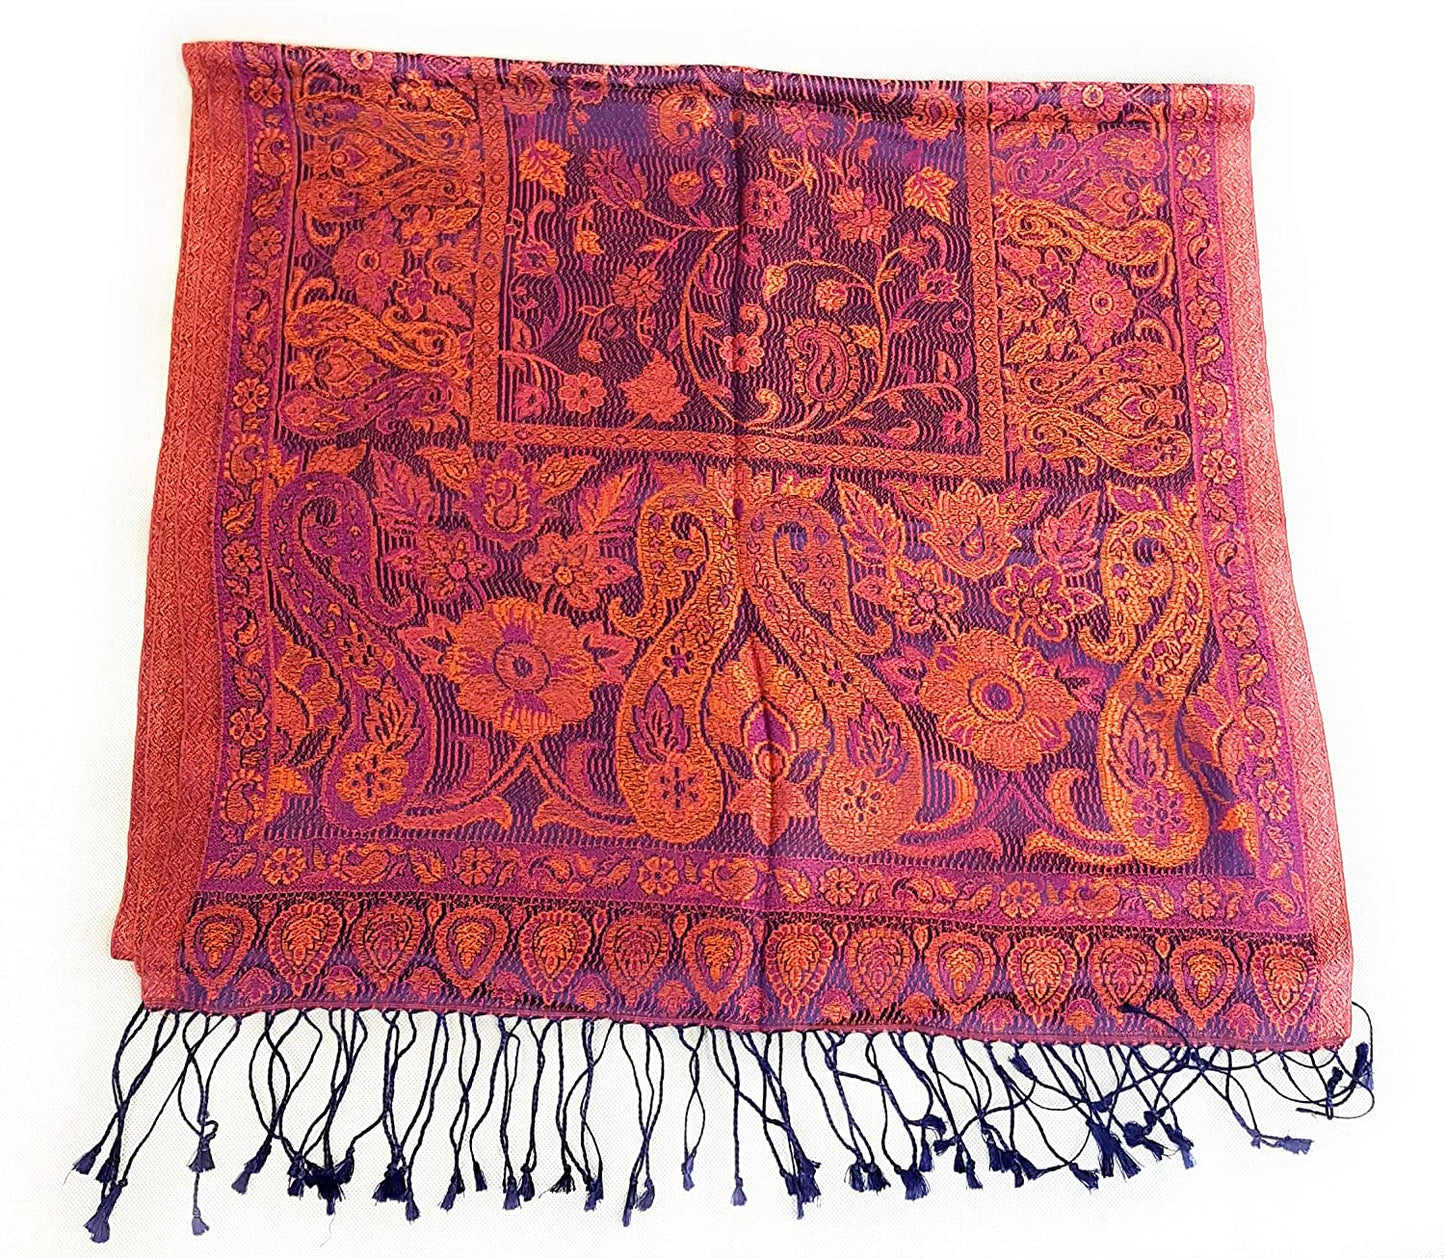 Luxus Seidenschal aus Indien für Damen & Herren, elegante Farben mit Fransen Paisley Muster 200 x 55 cm - Schal aus reiner Seide - diverse Designs